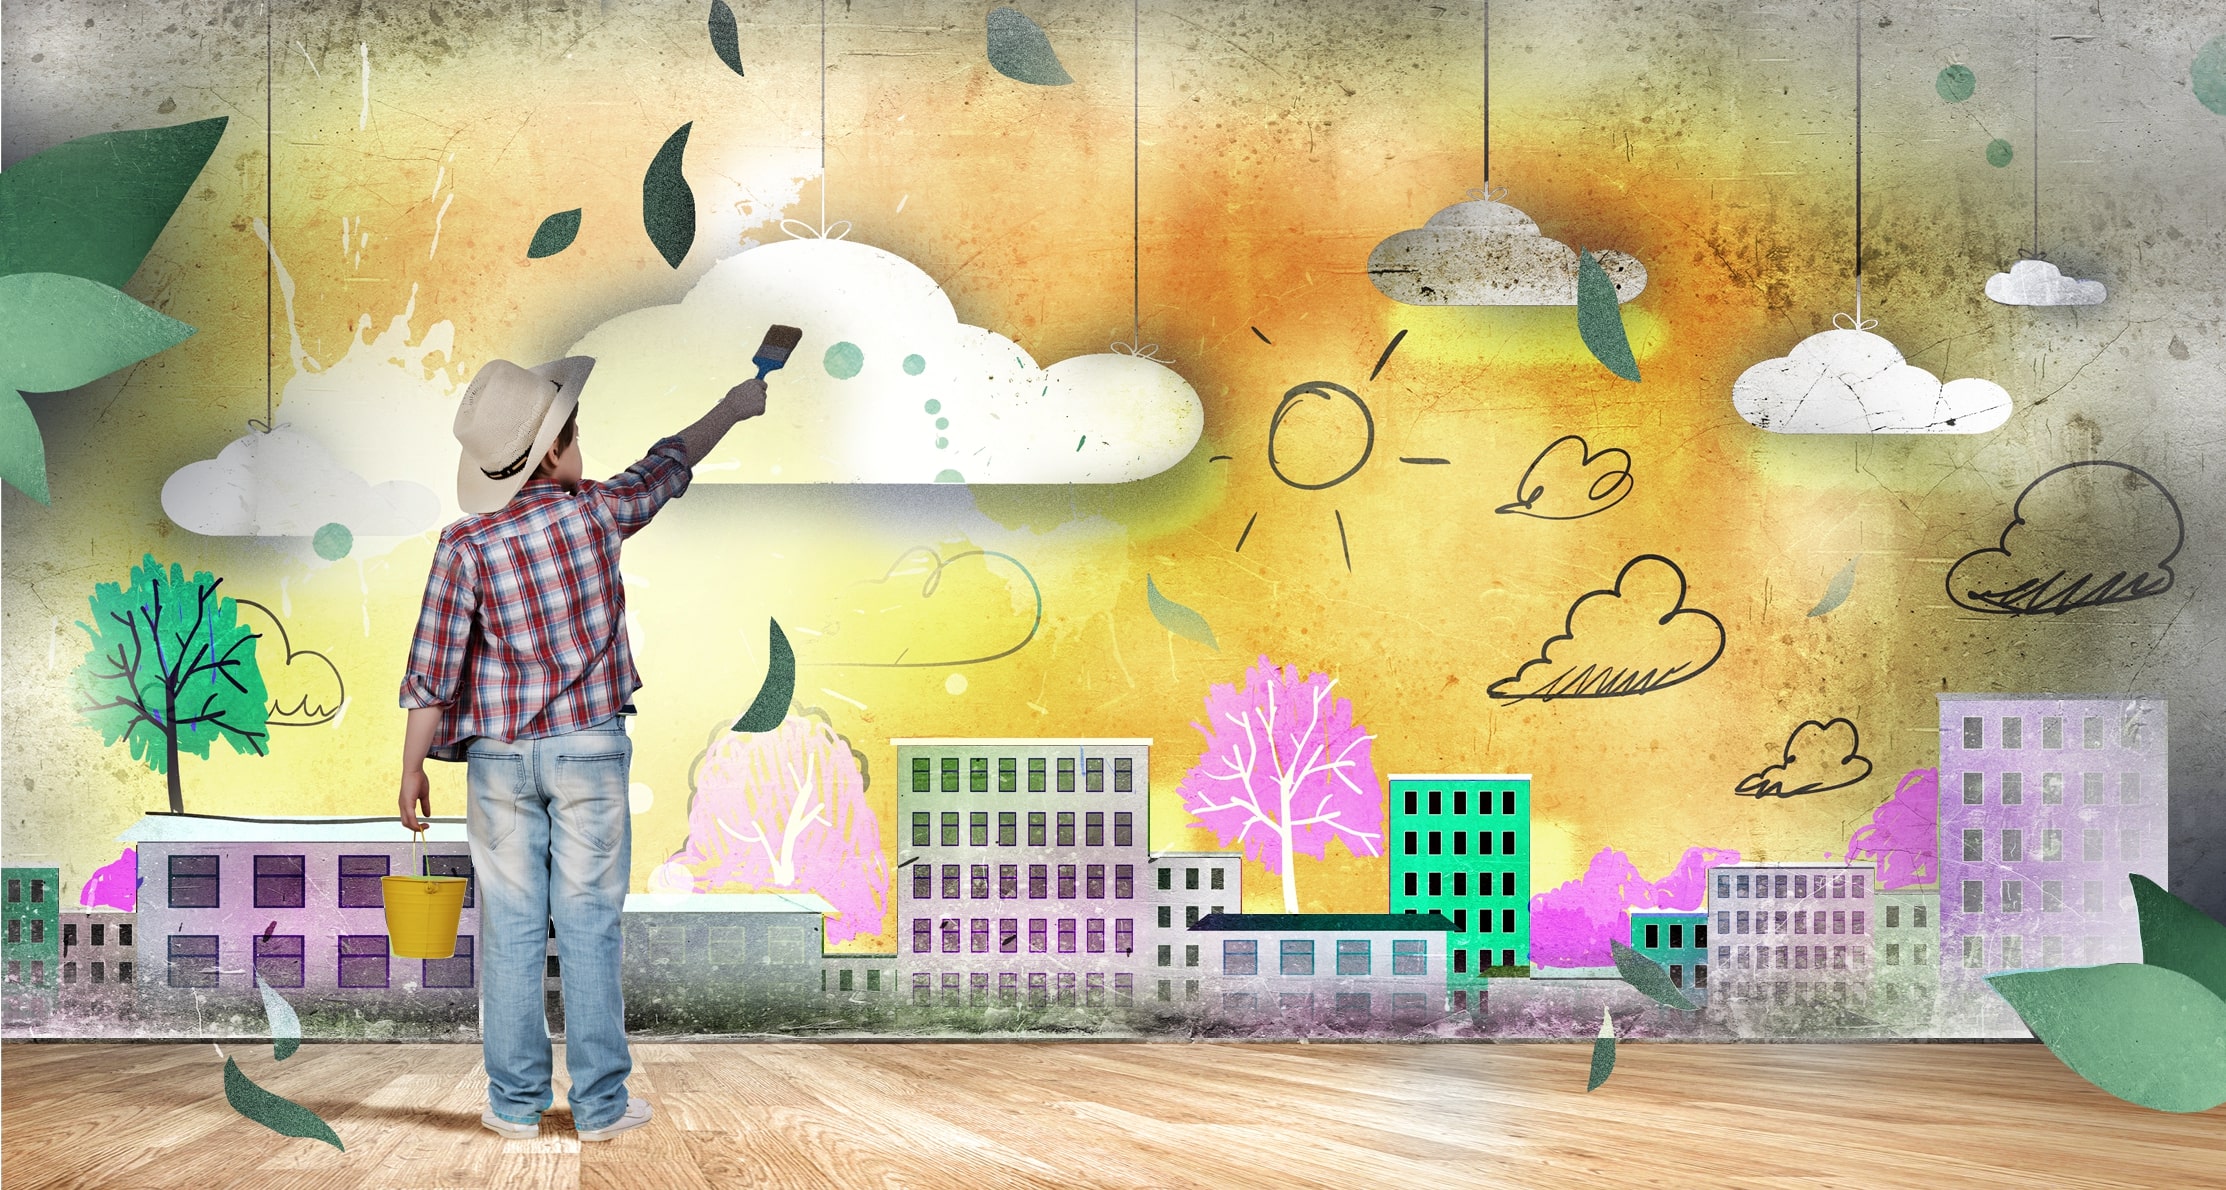 Ein junge zeichnet mit einem Pinsel auf einer Wand seine nachhaltige Vorstellung der Zukunft